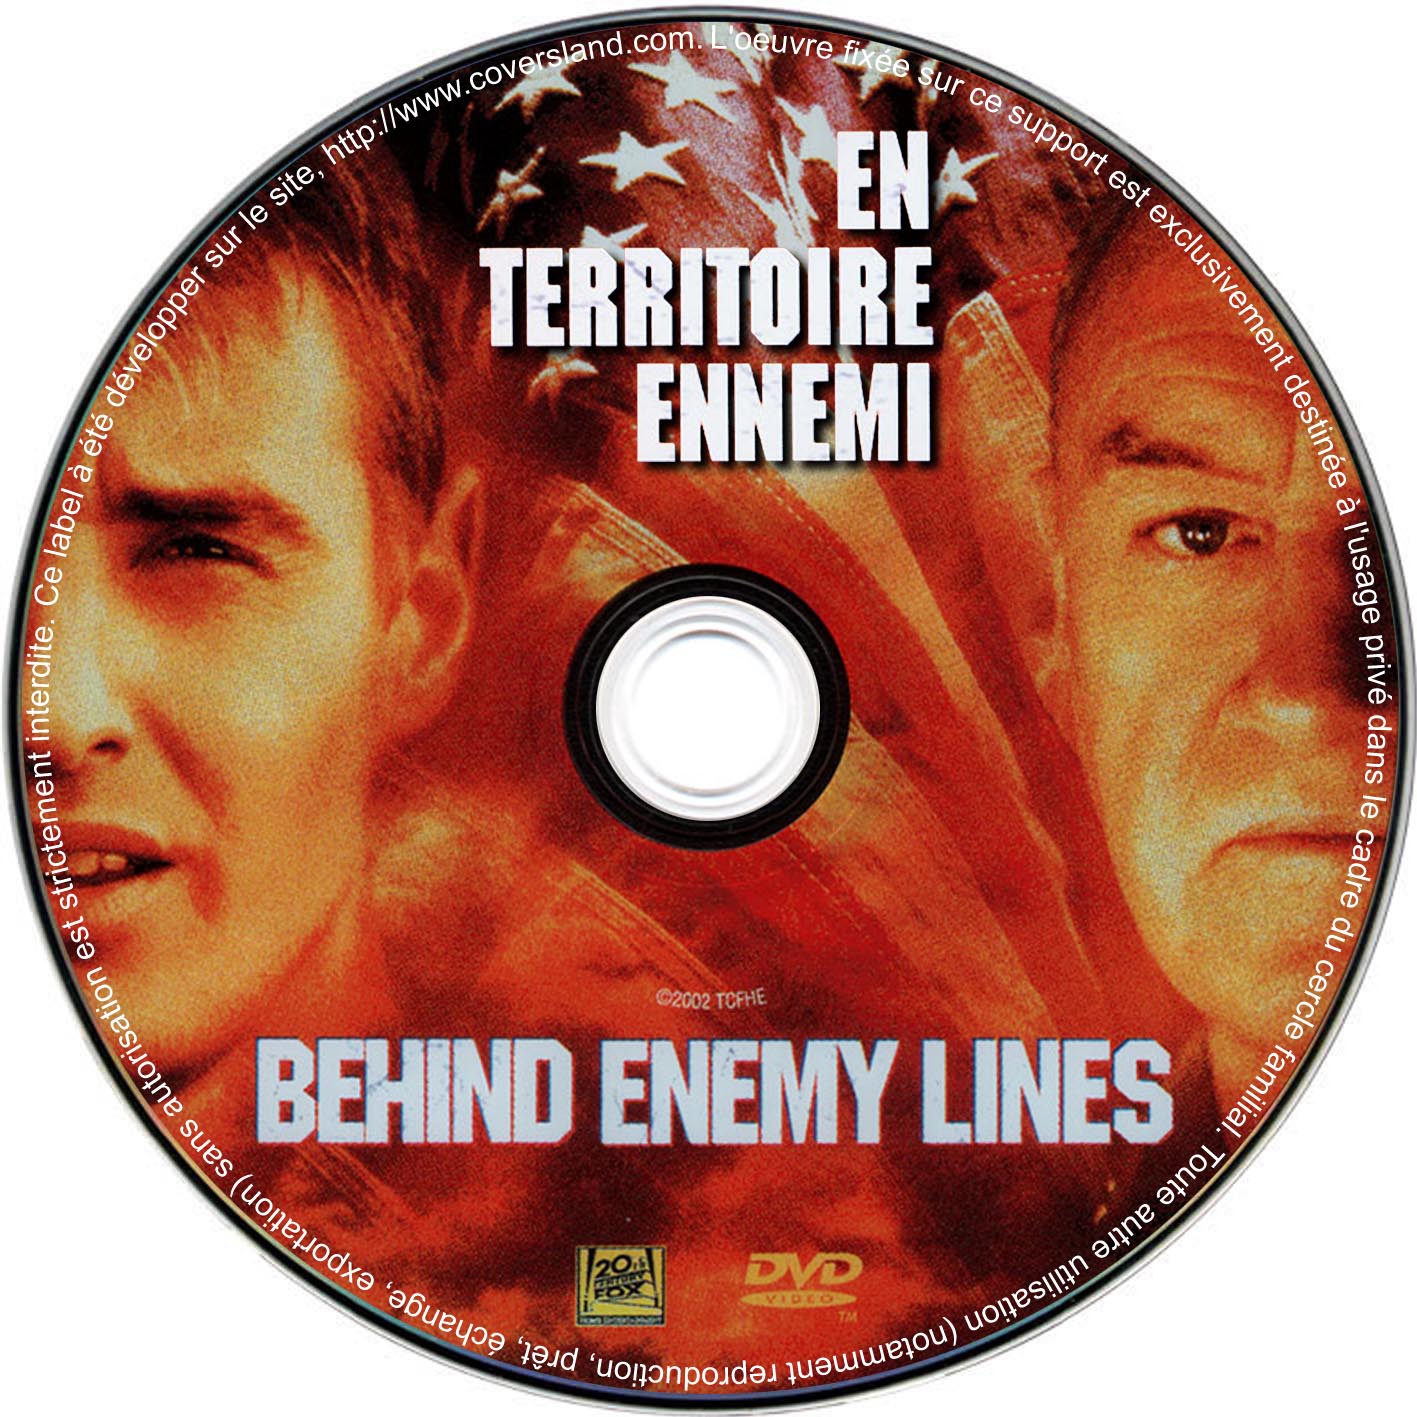 En territoire ennemi ( Behind enemy lines) (DVD)